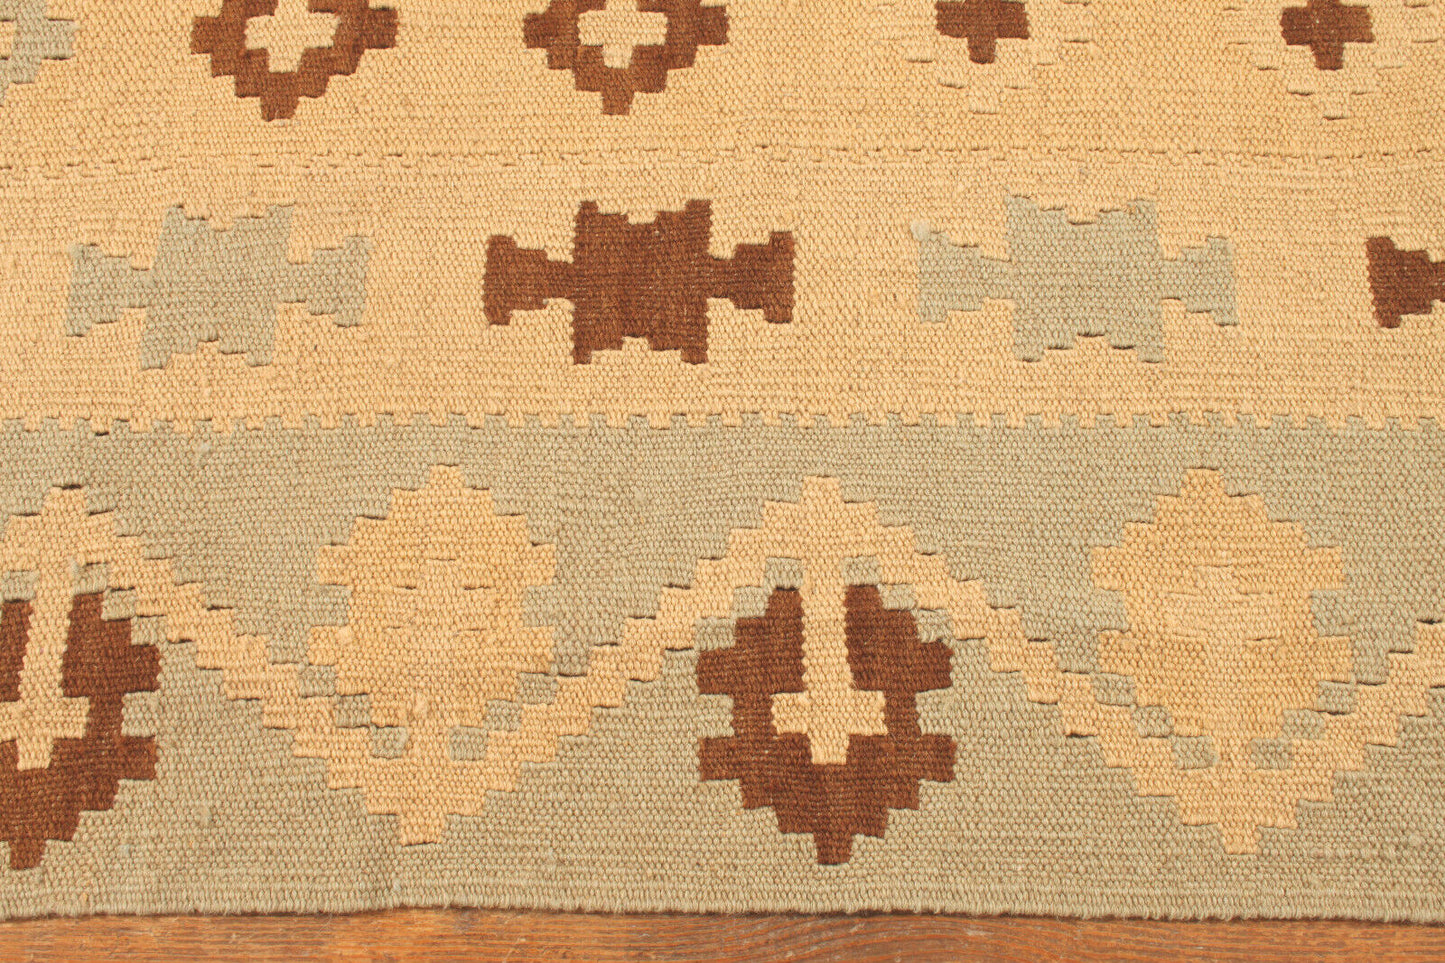 Side view of the Handmade Vintage Afghan Flatweave Kilim demonstrating texture